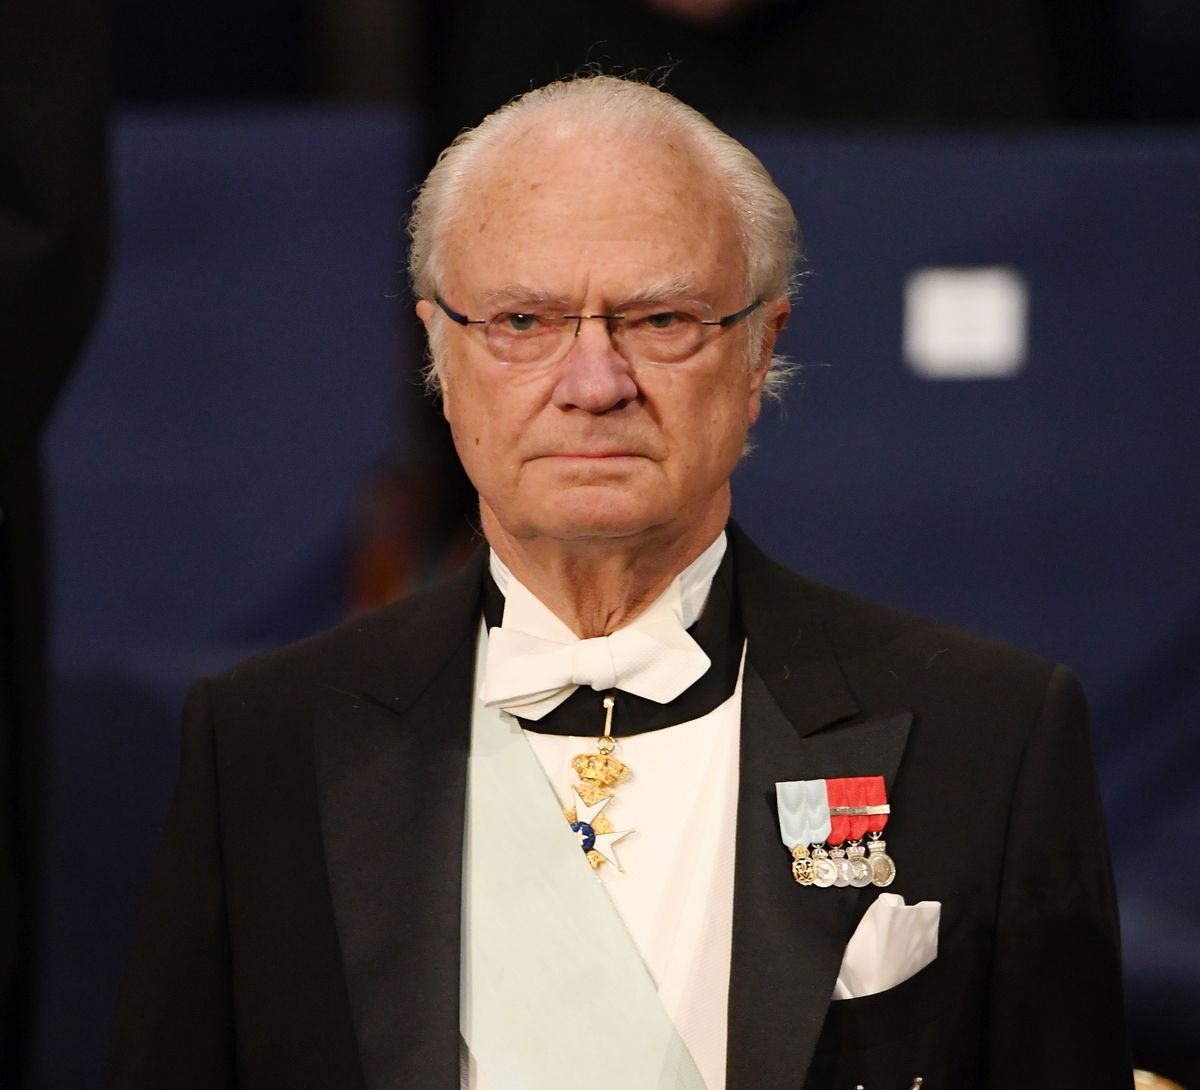 Król Szwecji wygłosił orędzie. "Mam 74 lata i przeżyłem wiele kryzysów"